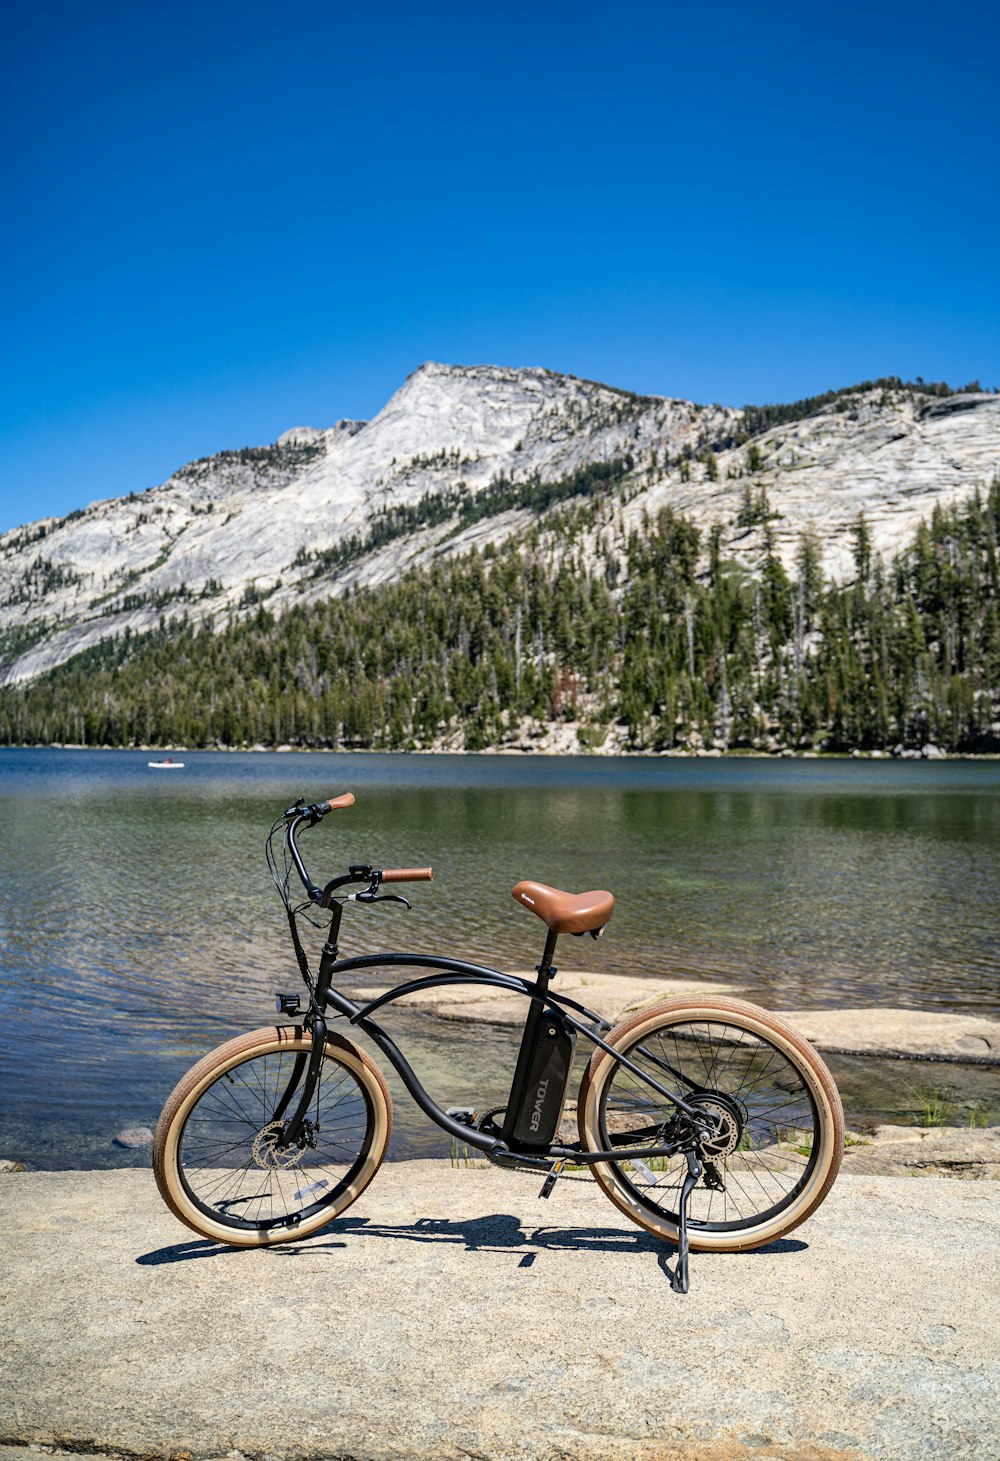 Bicicletta nera sul molo di legno marrone vicino al lago durante il giorno